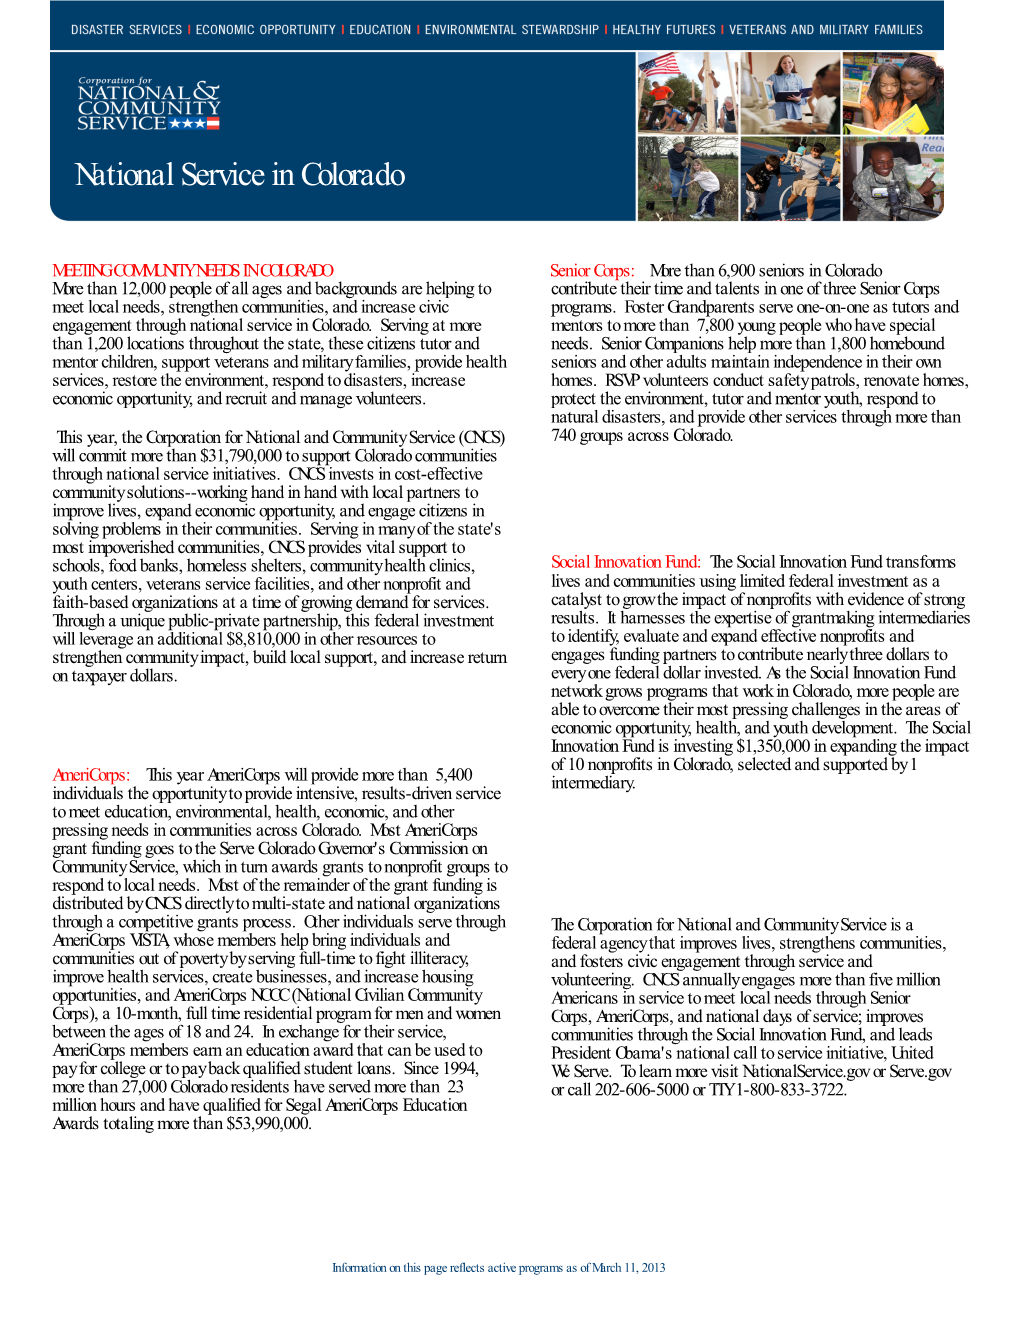 National Service in Colorado